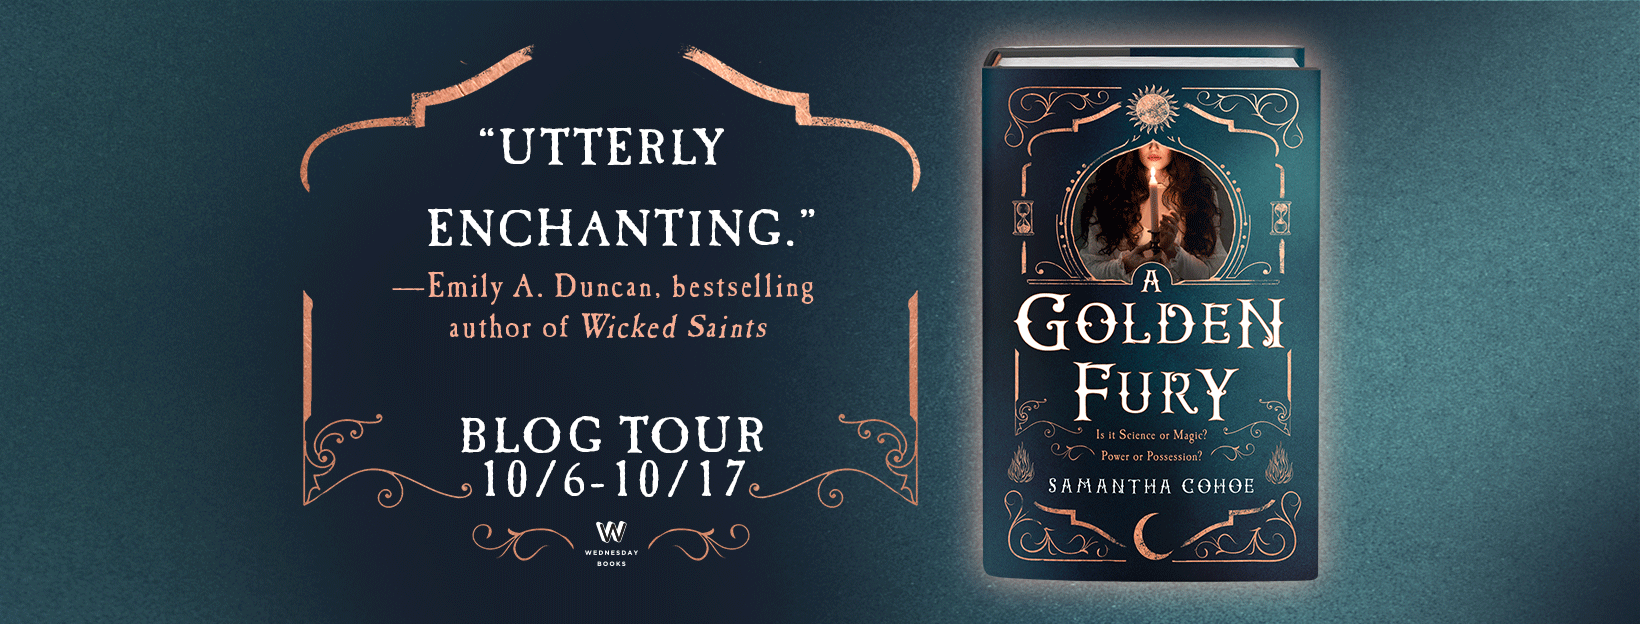 A Golden Fury_Blog Tour Banner